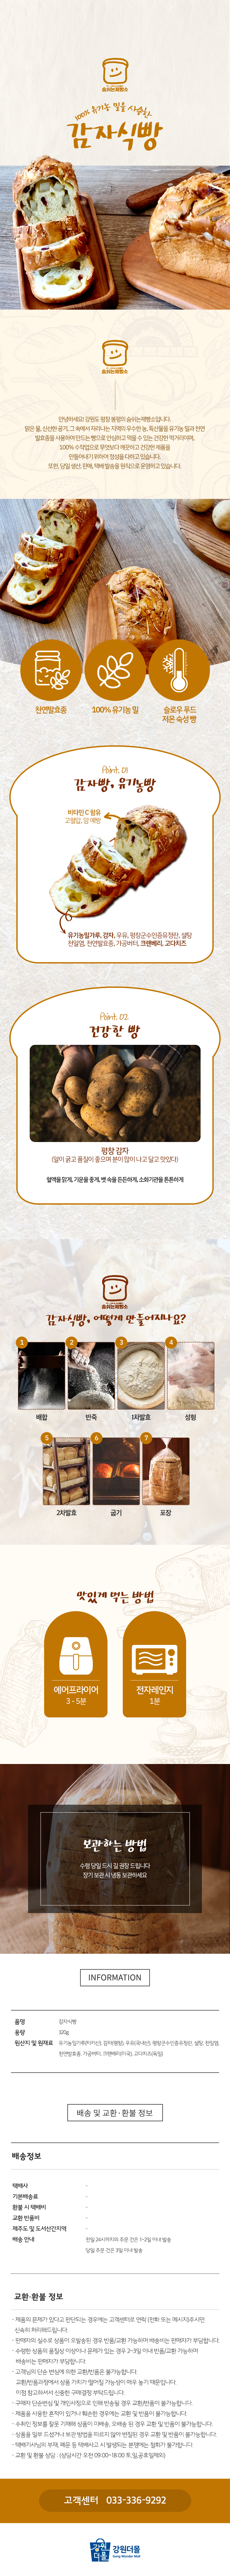 숨쉬는제빵소 평창로컬푸드 베이커리 천연발효종 감자식빵 맛있는빵 수제빵 감자빵 특이한빵 추천